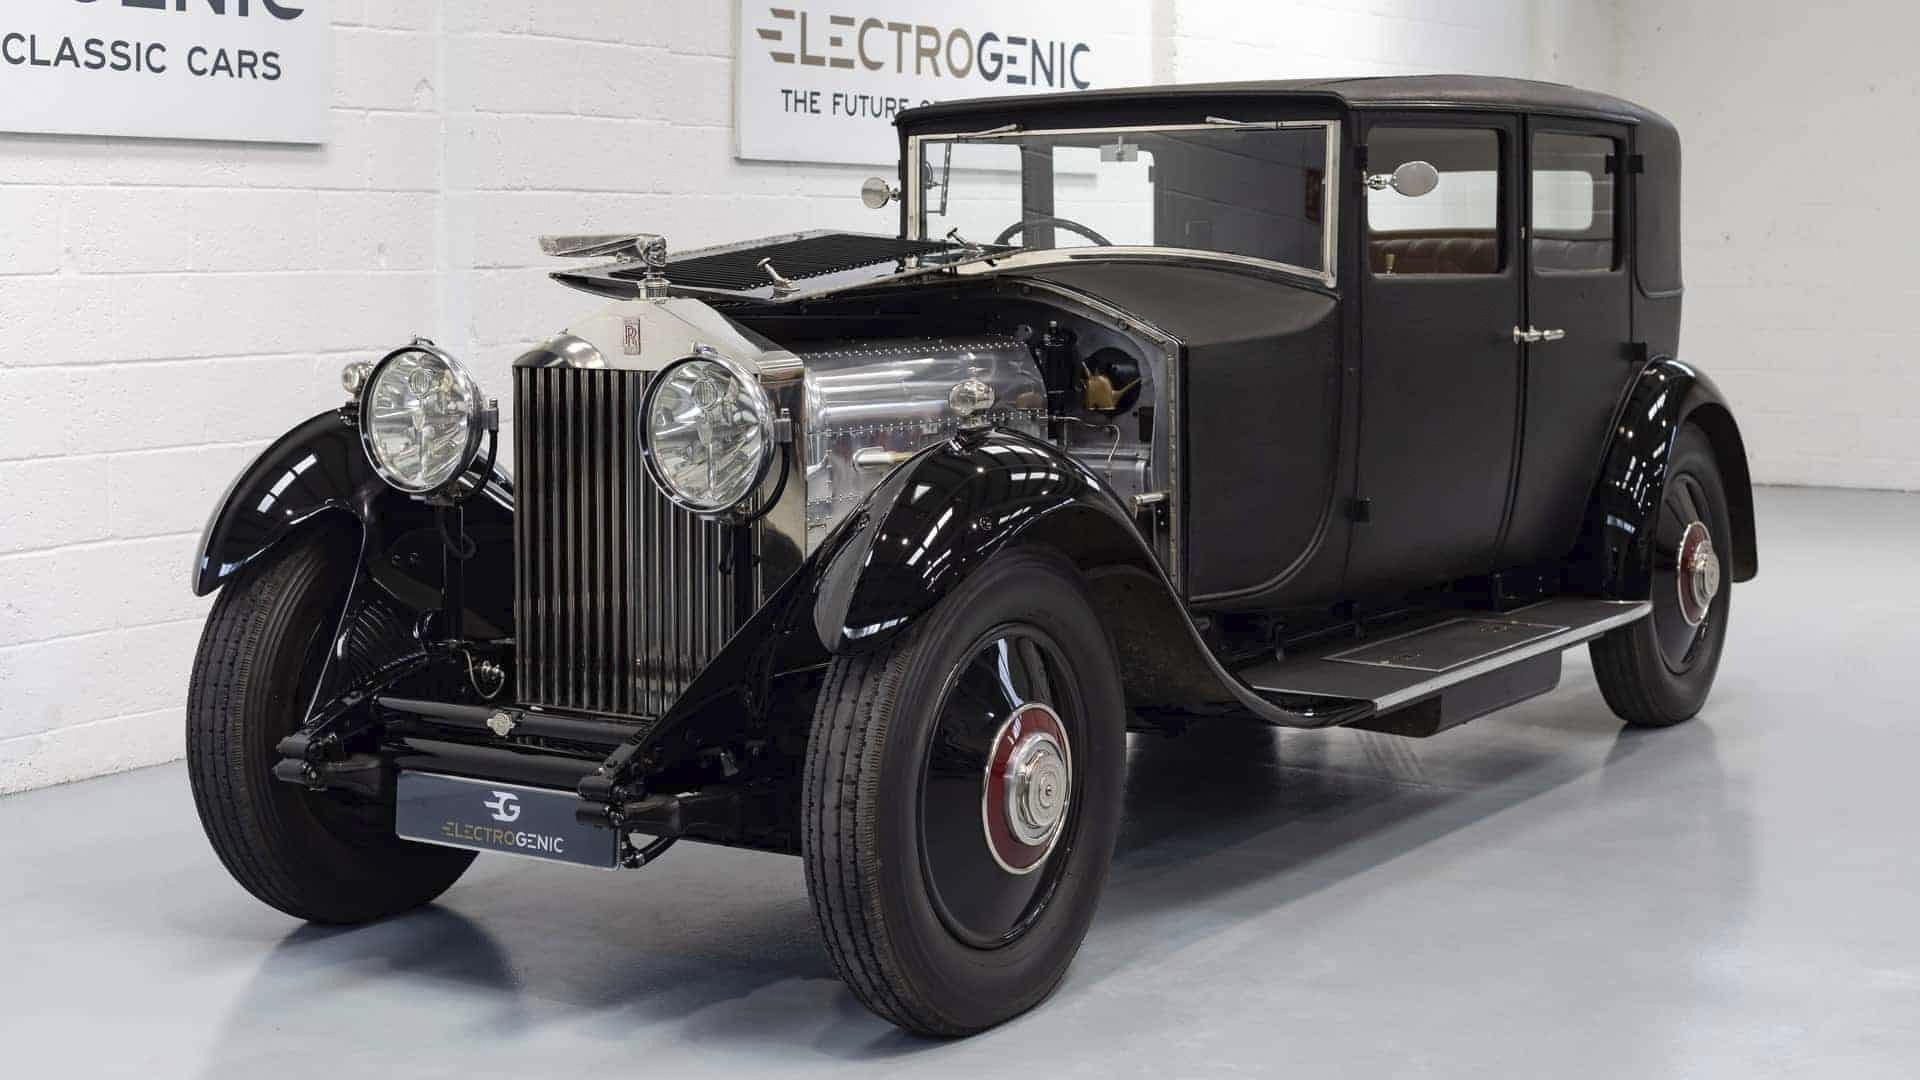 O Clássico Se Renova, Rolls-Royce de 1929 agora roda com motor elétrico e bateria de 93 kWh